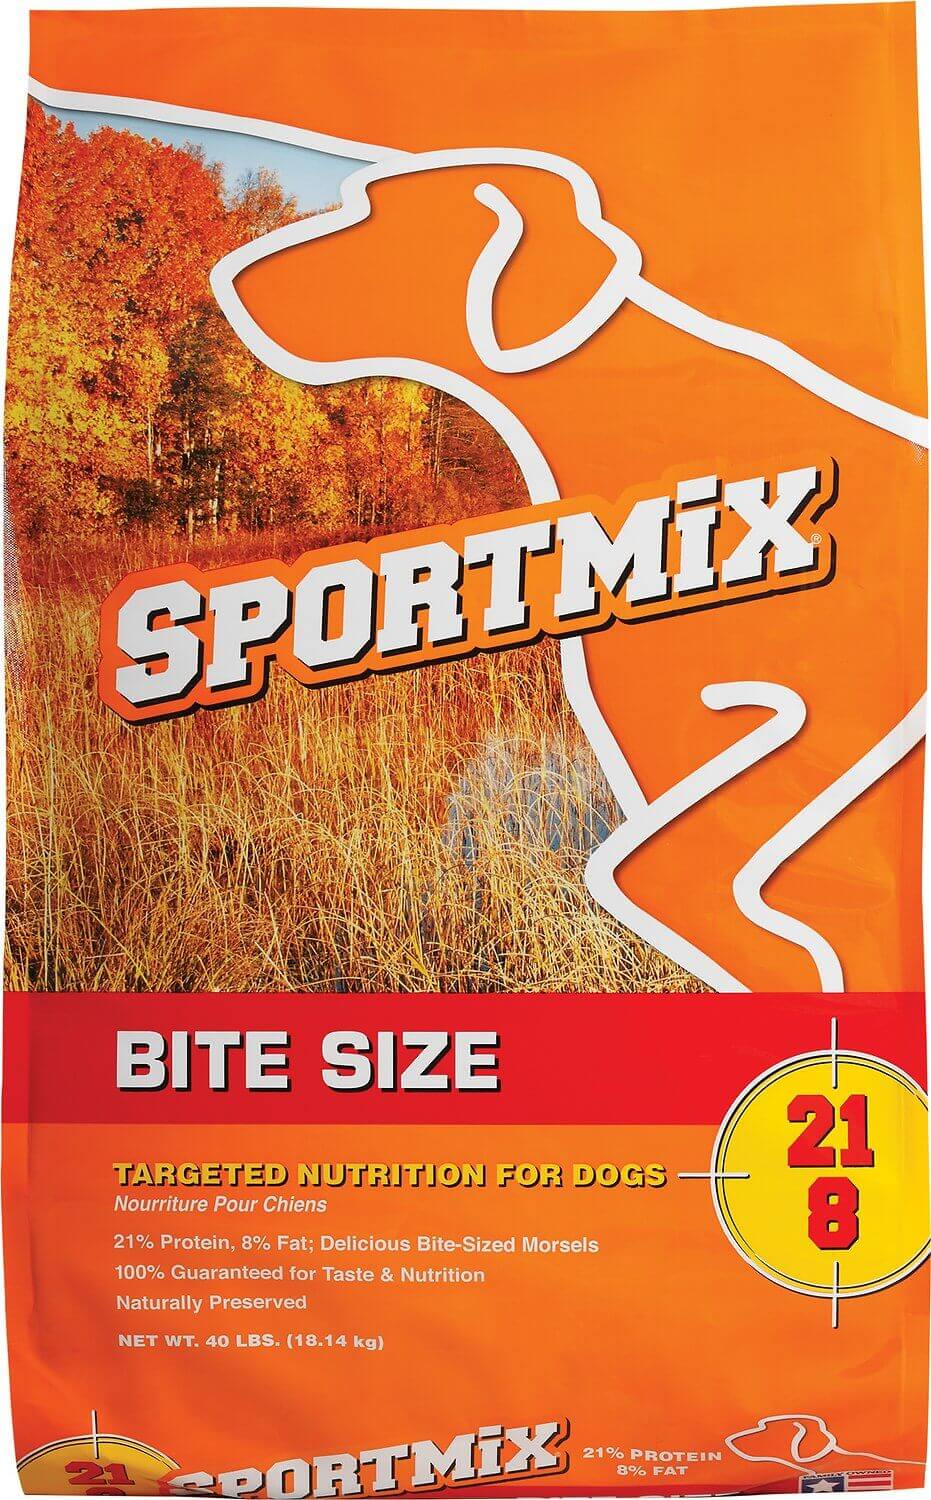 Sportmix Original Dog Food Review (Dry)